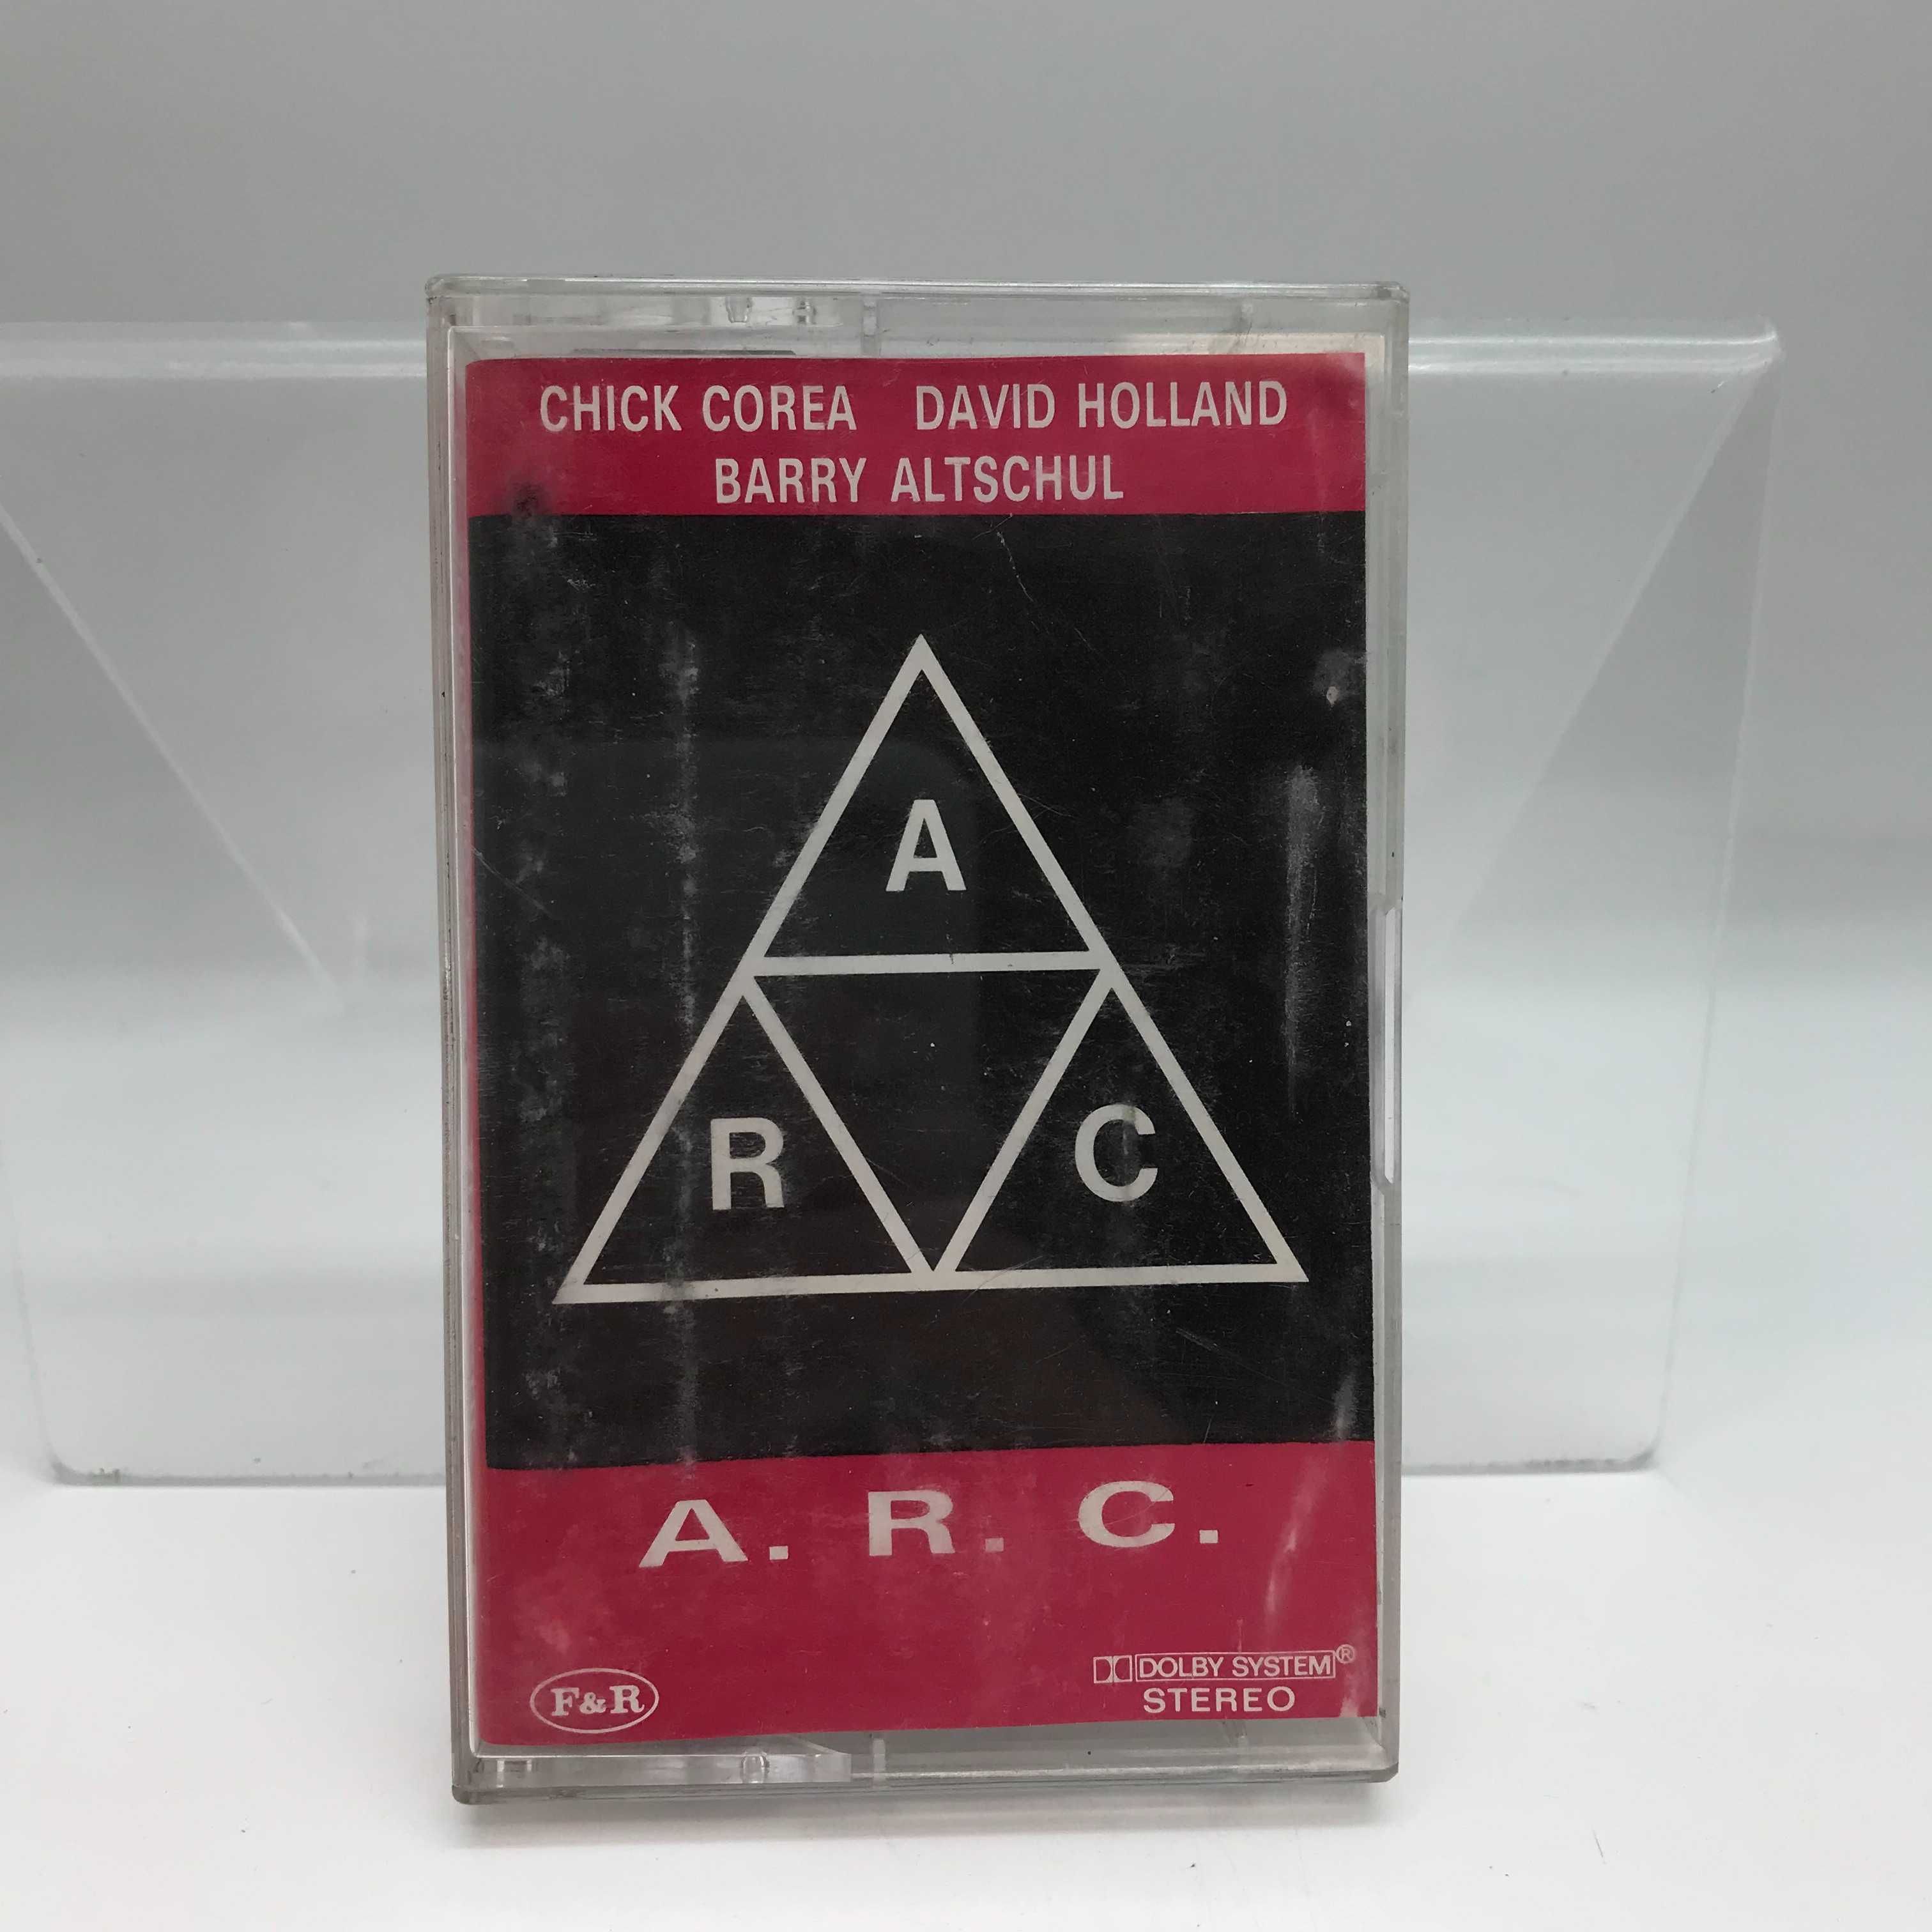 kaseta corea, holland, altschul - a.r.c. (2845)